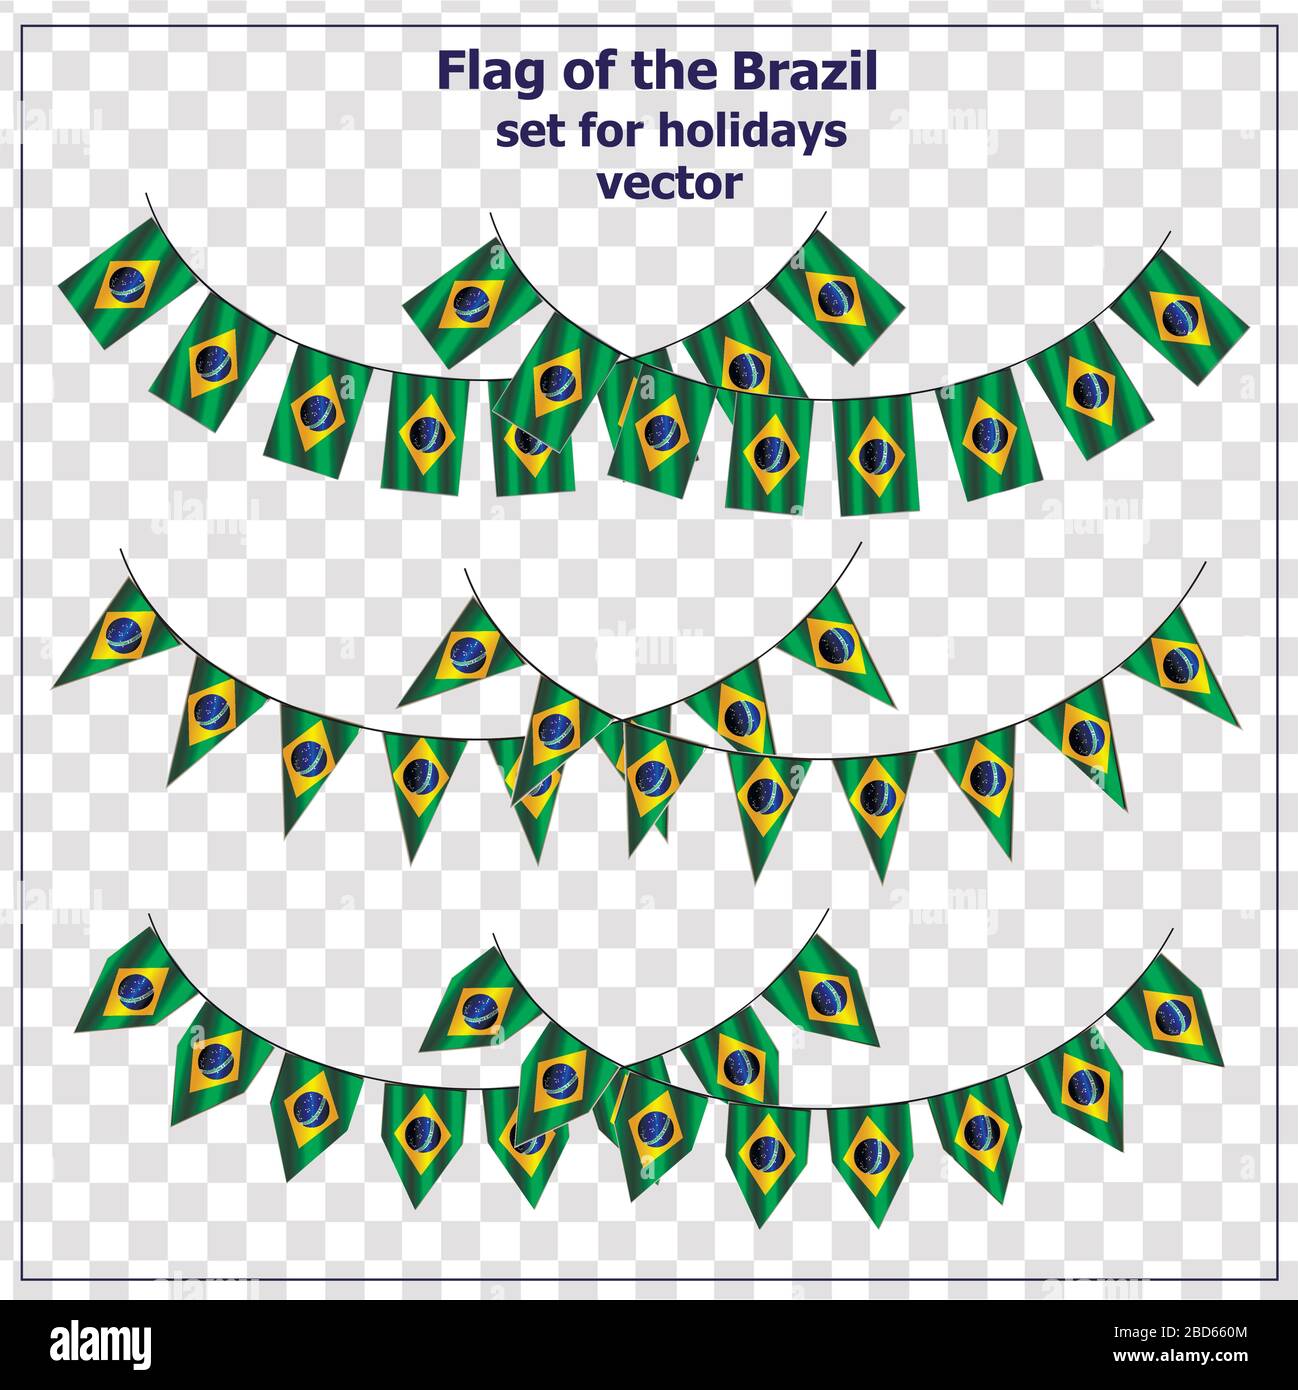 Pour les vacances avec le drapeau du Brésil. Bonne journée au Brésil. Illustration vectorielle avec arrière-plan transparent. Illustration de Vecteur